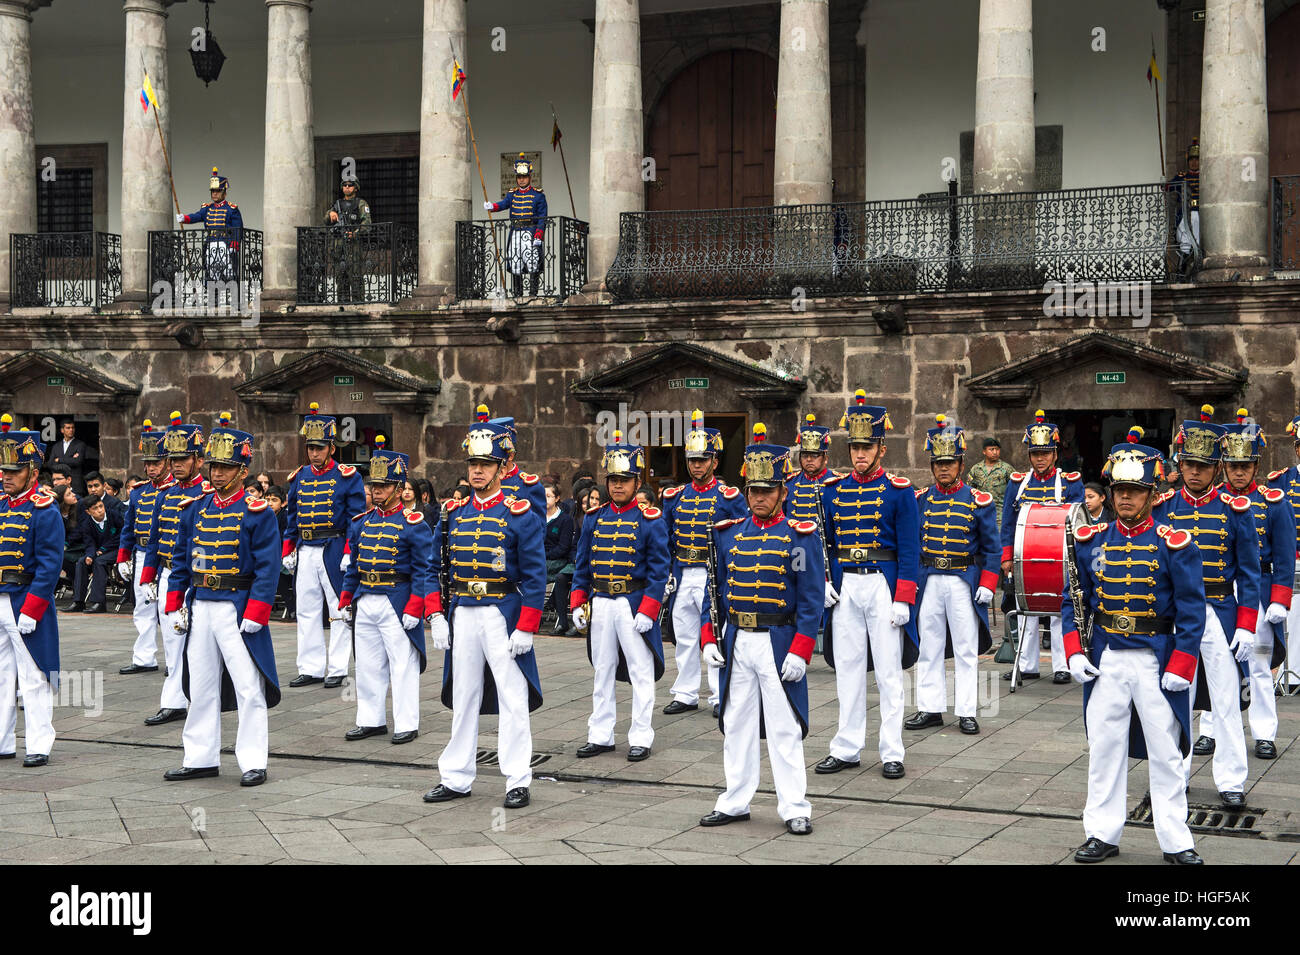 Relève de la garde au Palais présidentiel, Carondelet, Quito, Équateur Banque D'Images